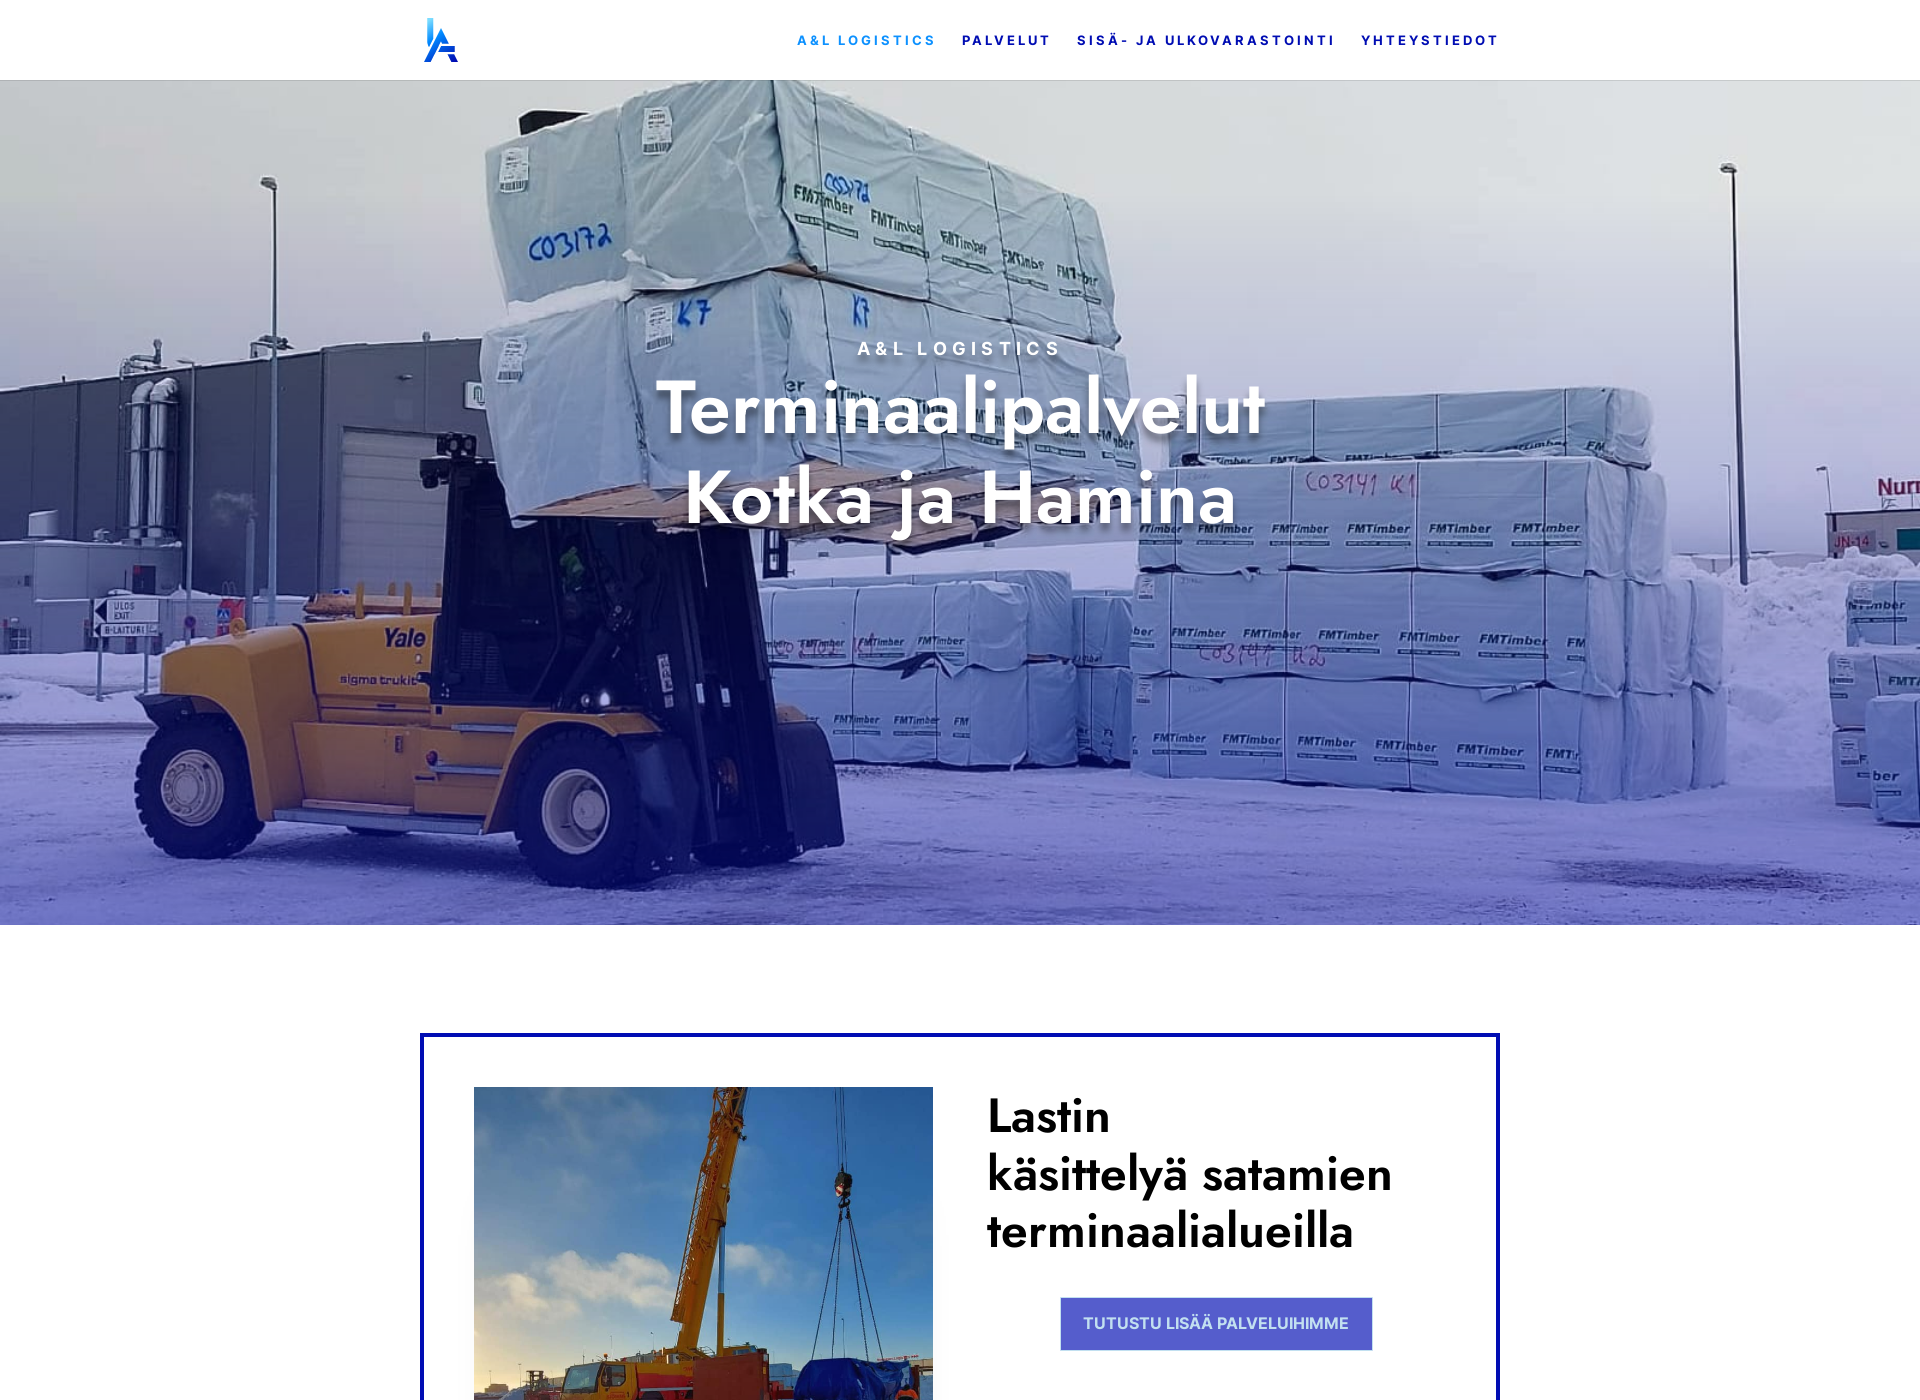 Näyttökuva allogistics.fi